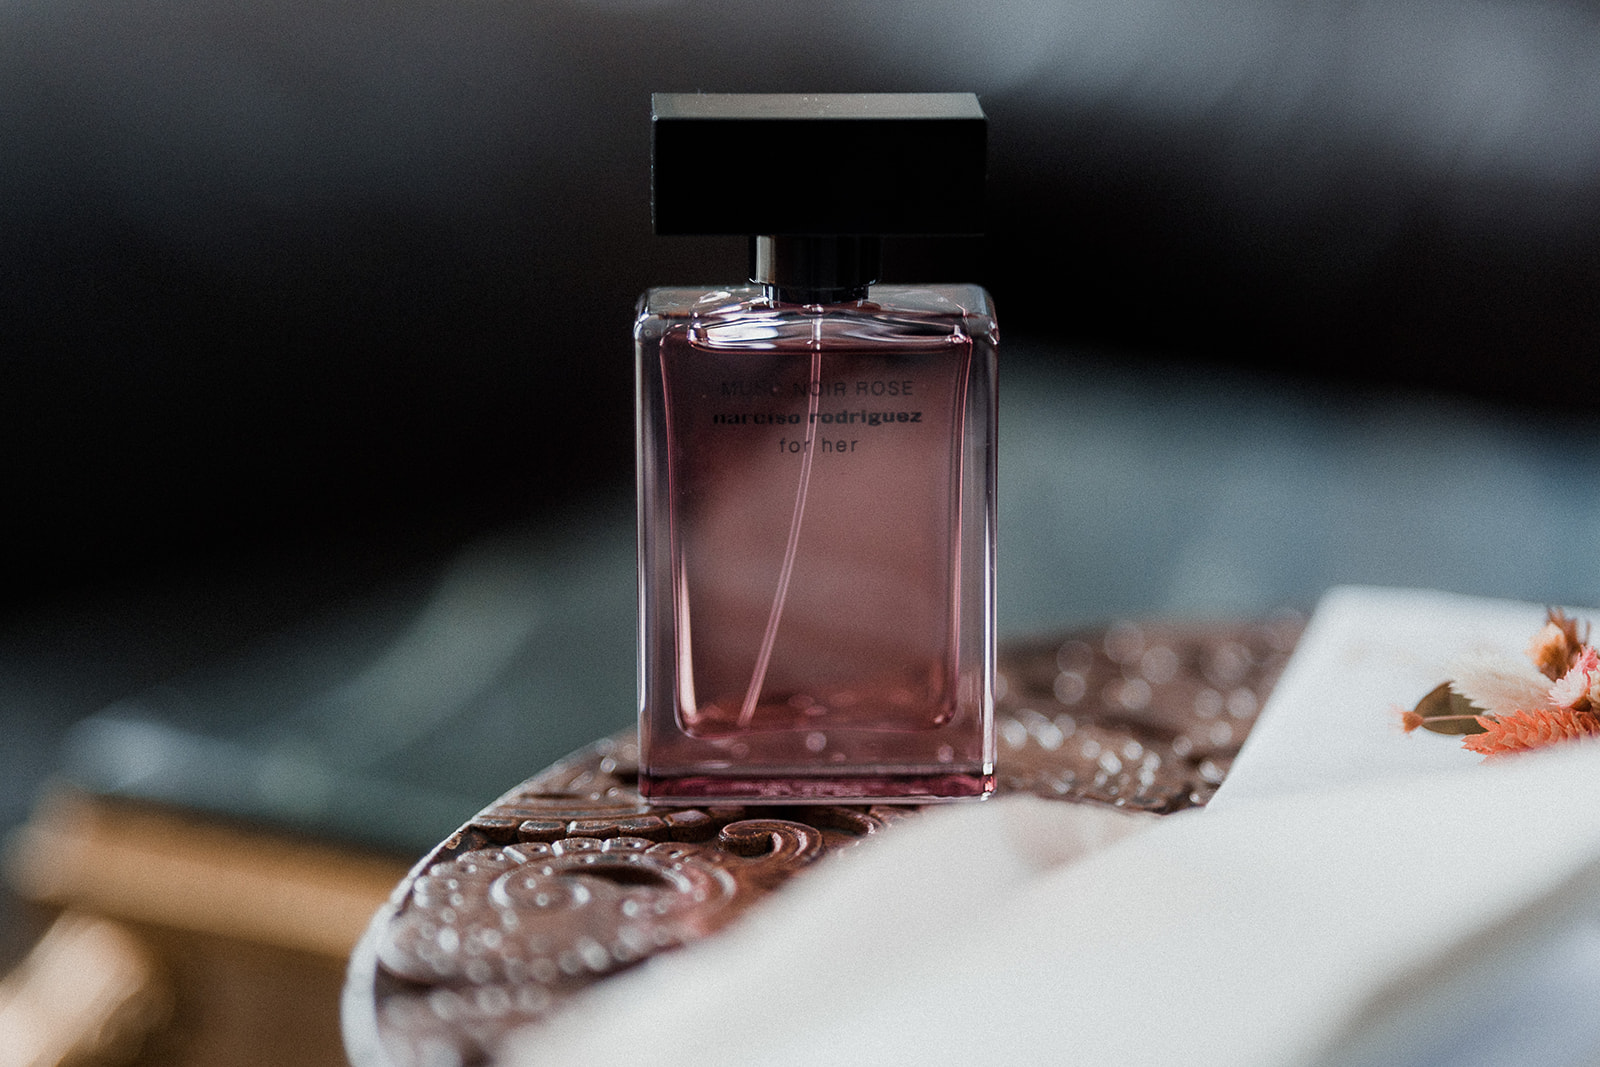 detailshot van de parfum